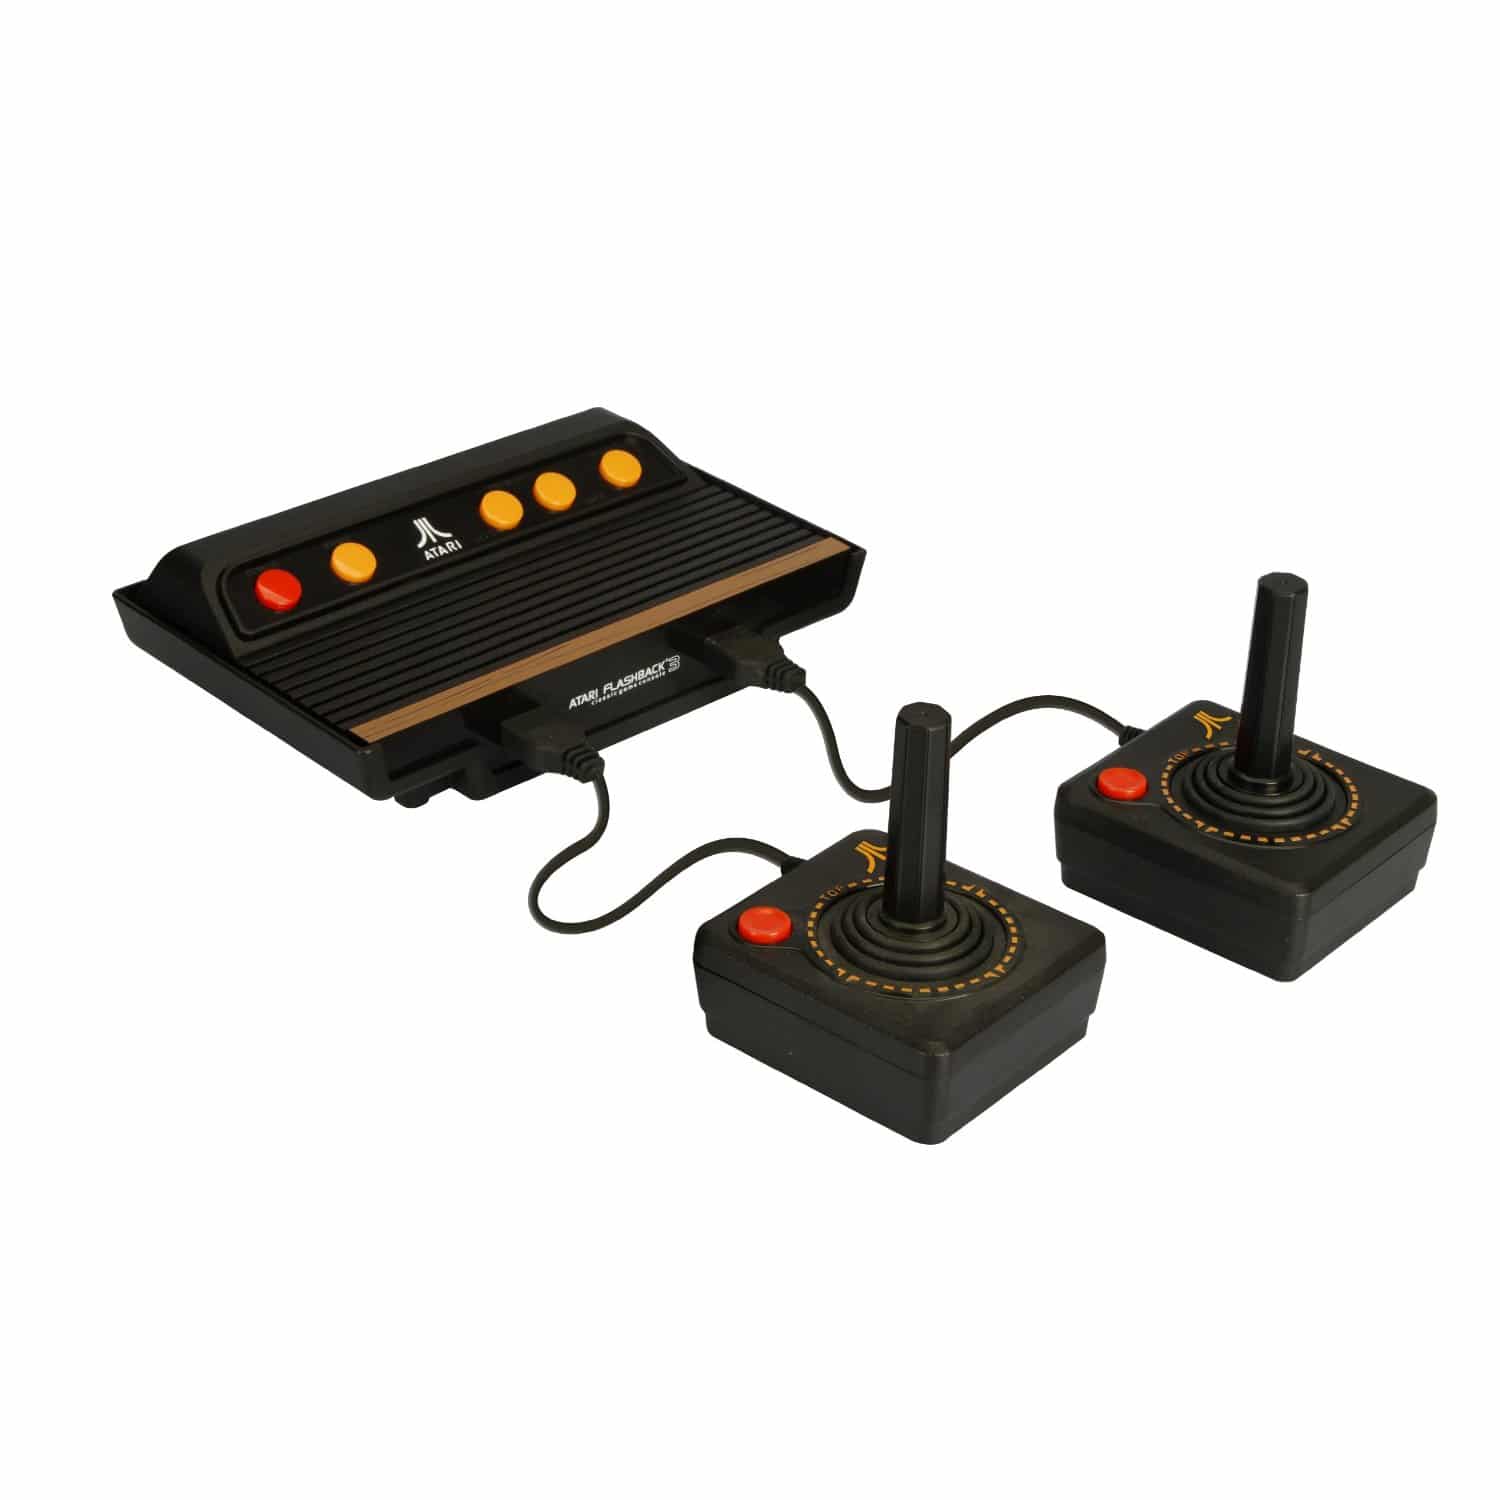 Atari Flashback 3 Gaming Console